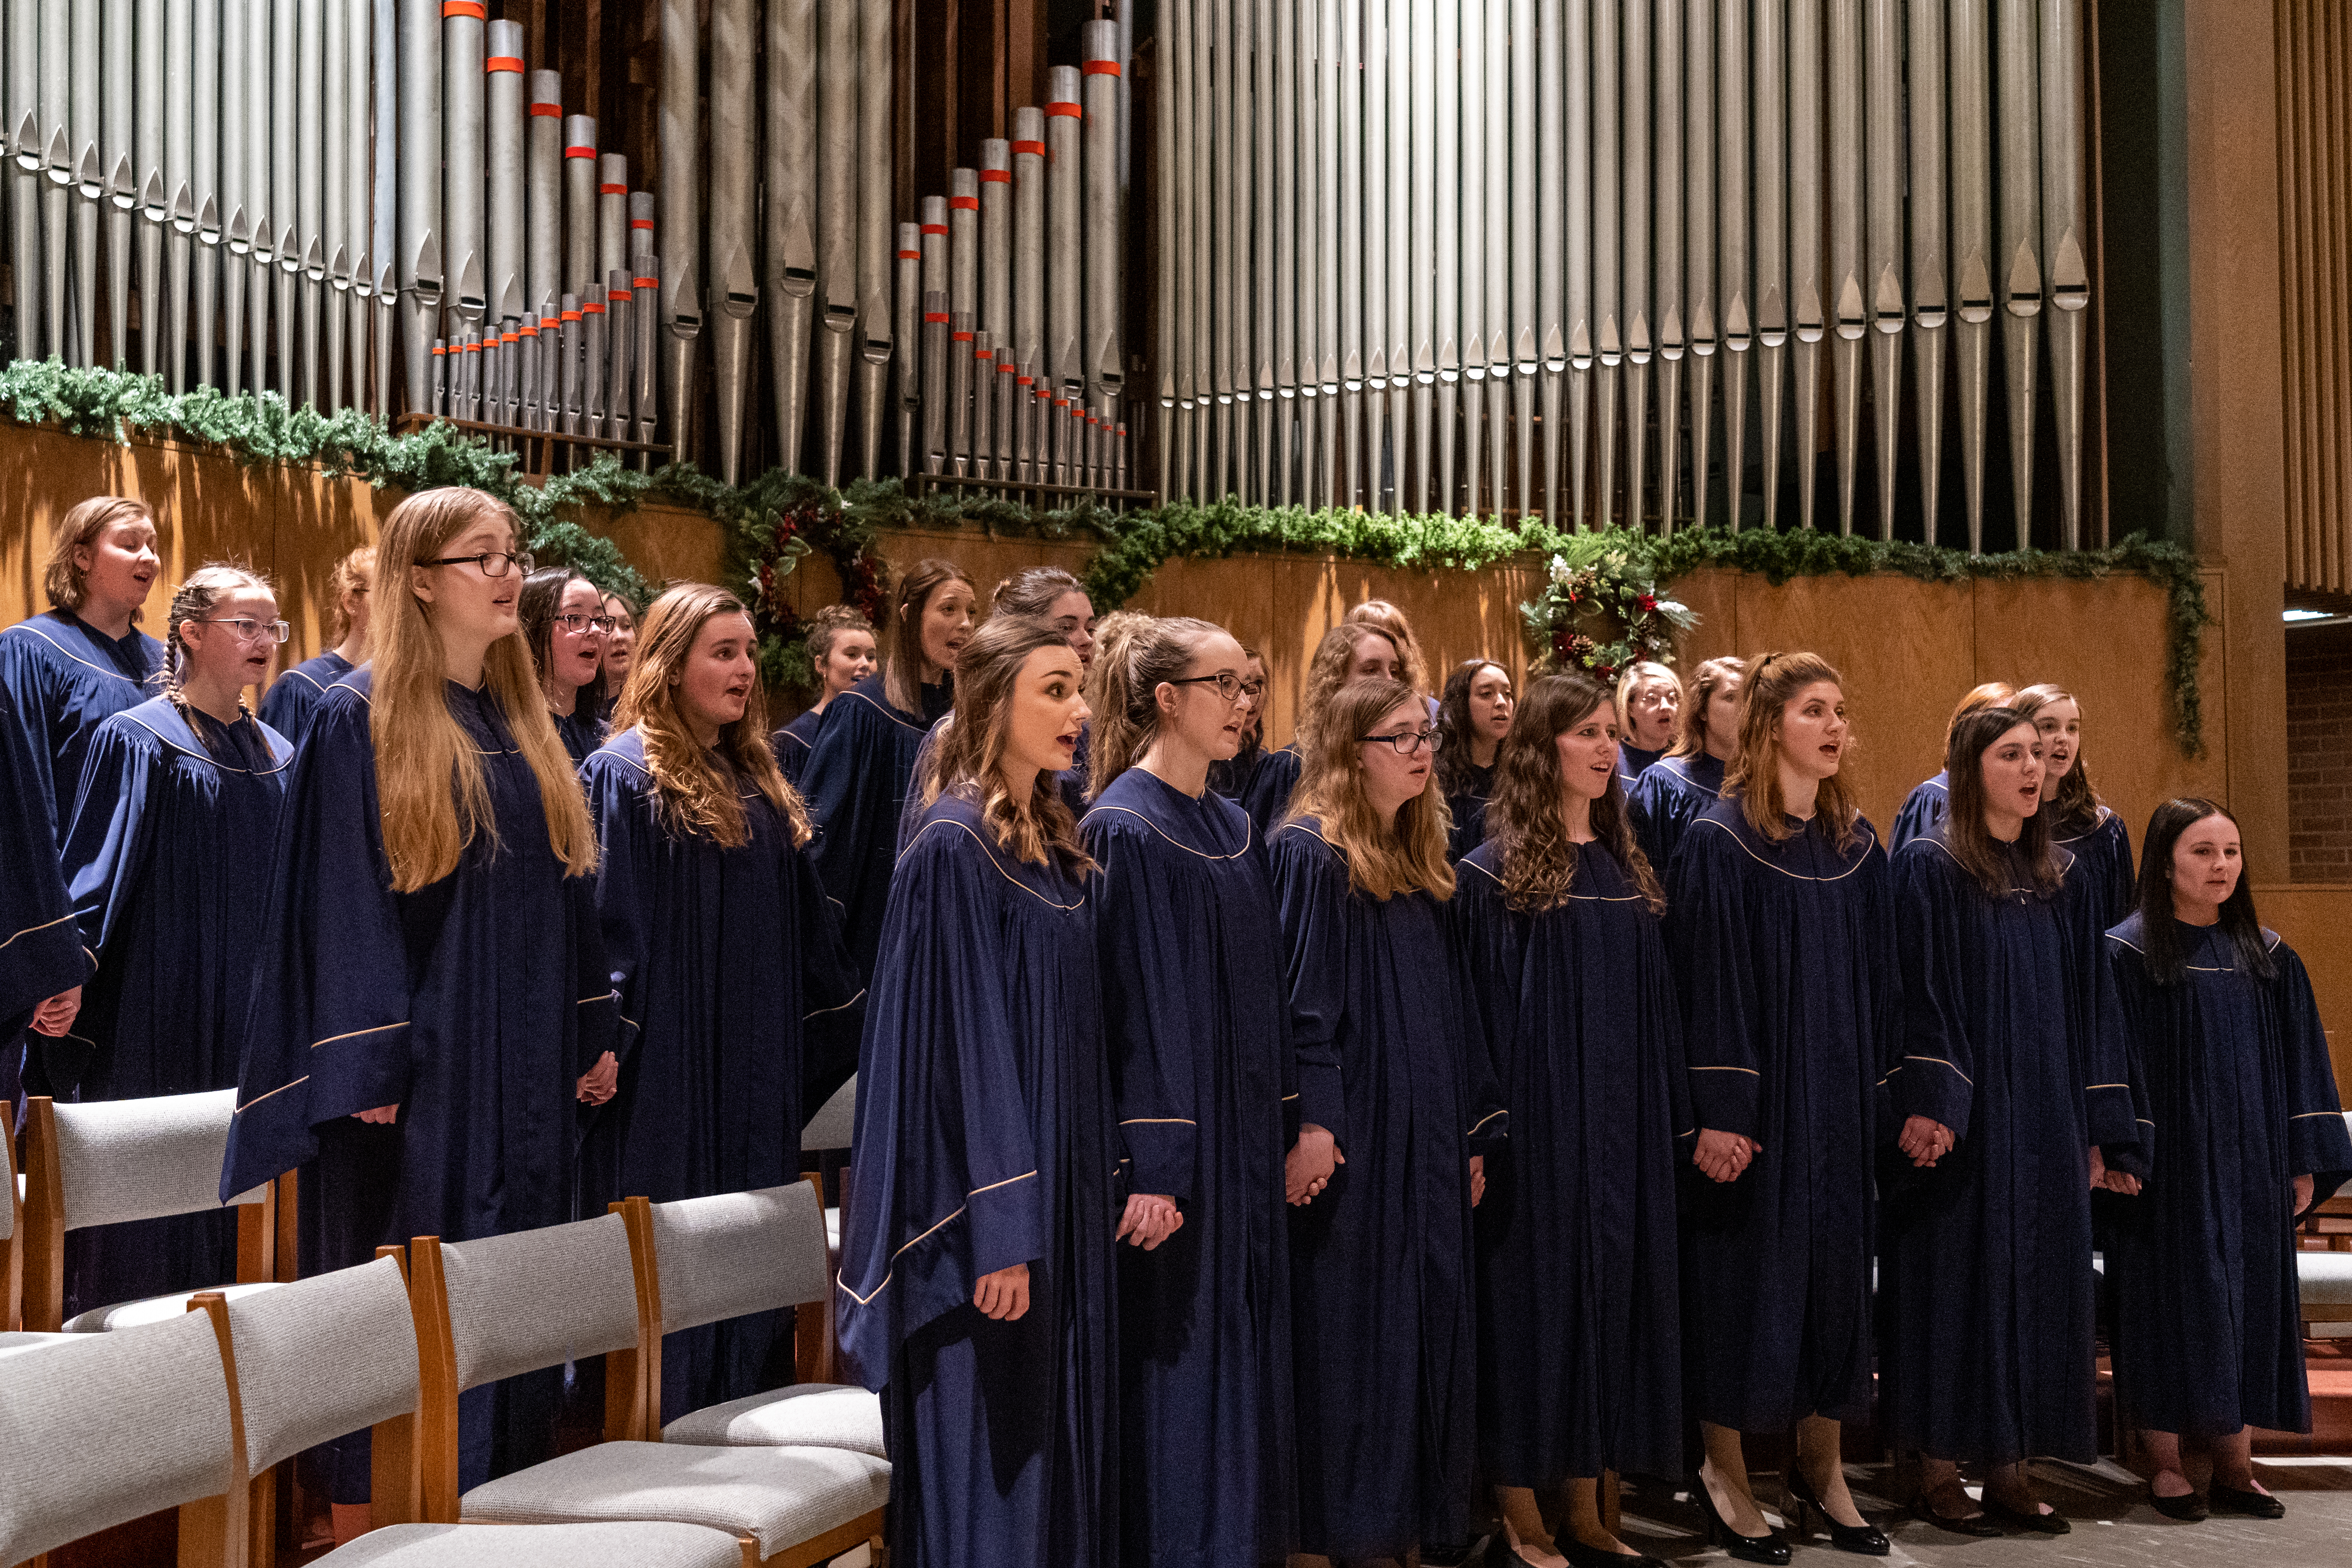 Angelus choir performing at Vespers